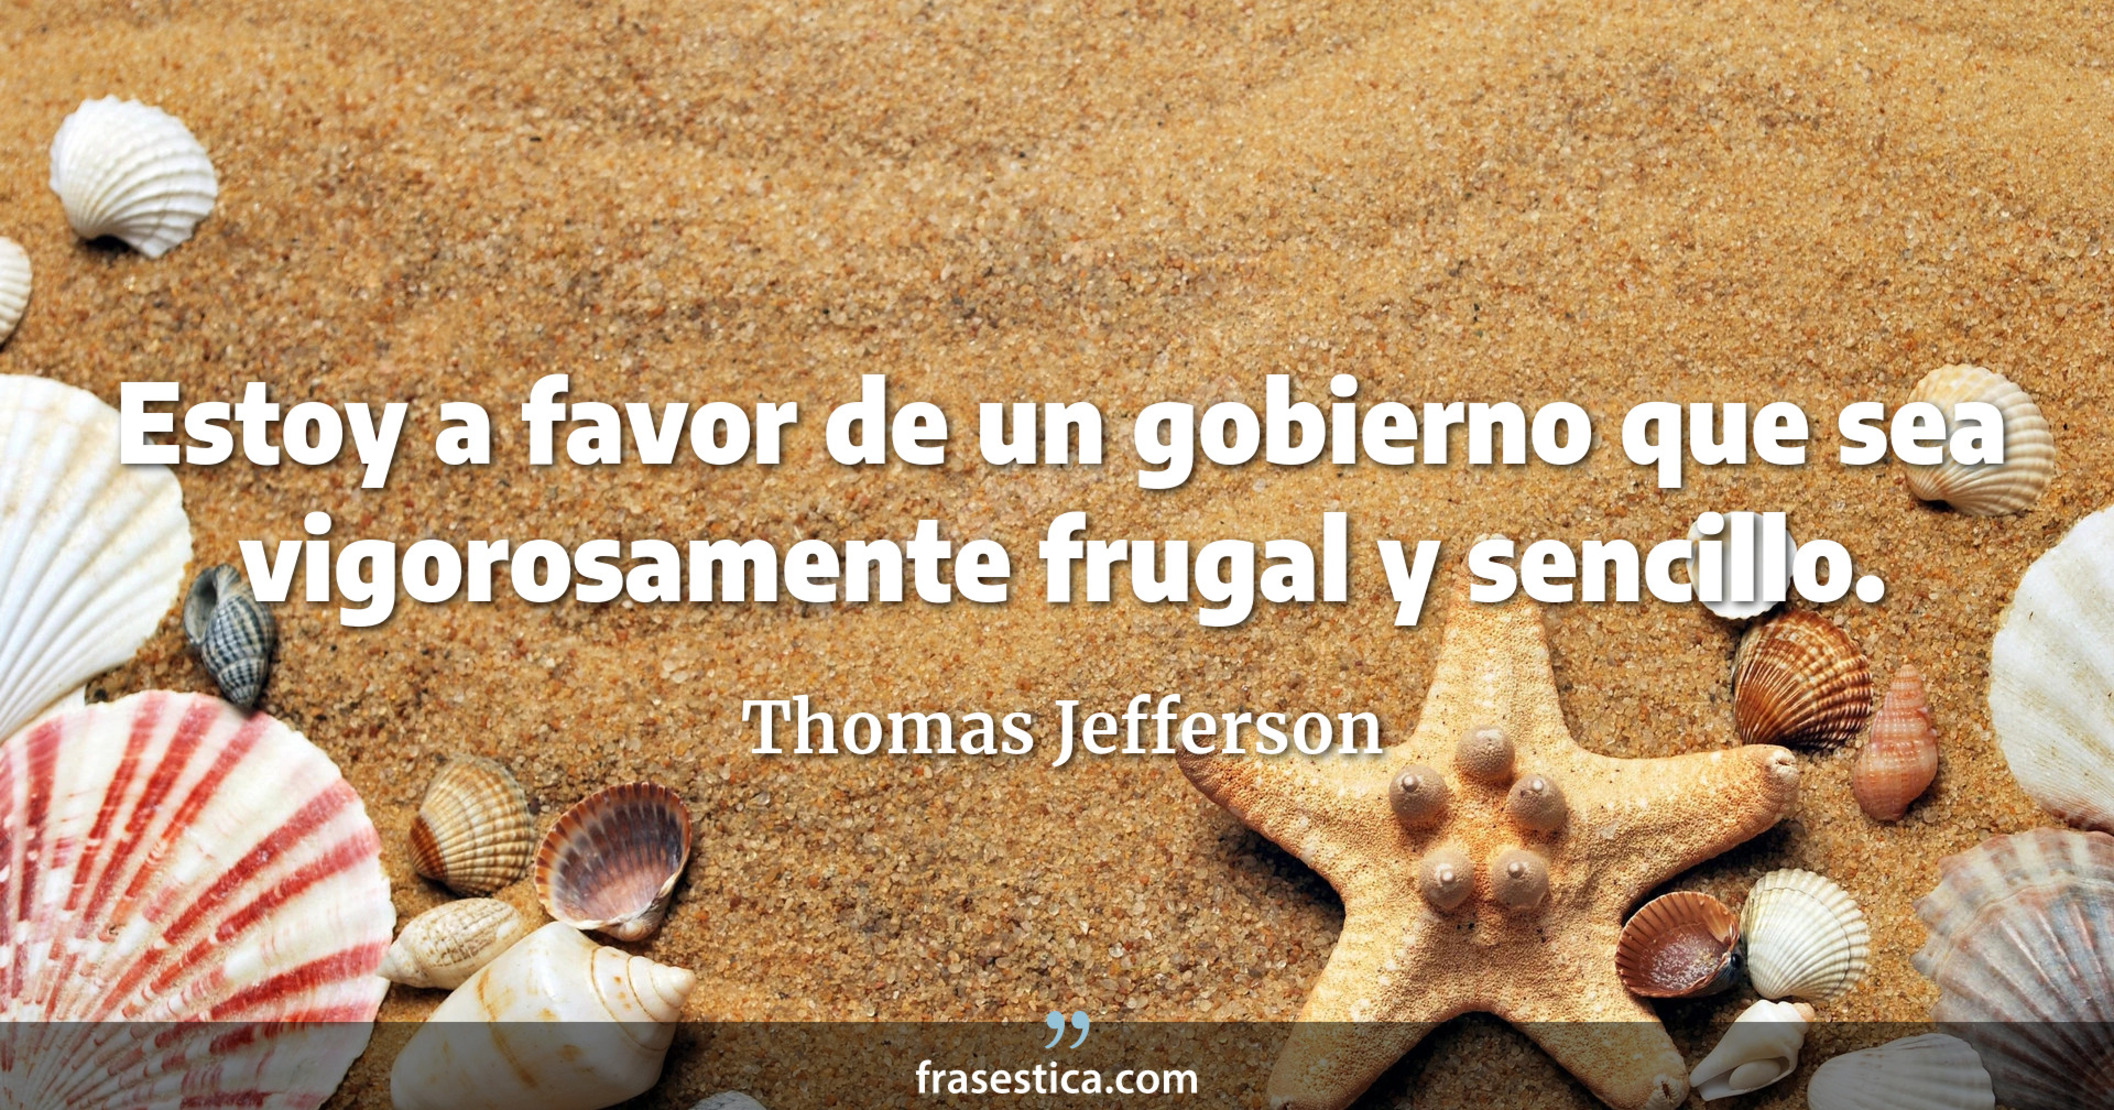 Estoy a favor de un gobierno que sea vigorosamente frugal y sencillo. - Thomas Jefferson